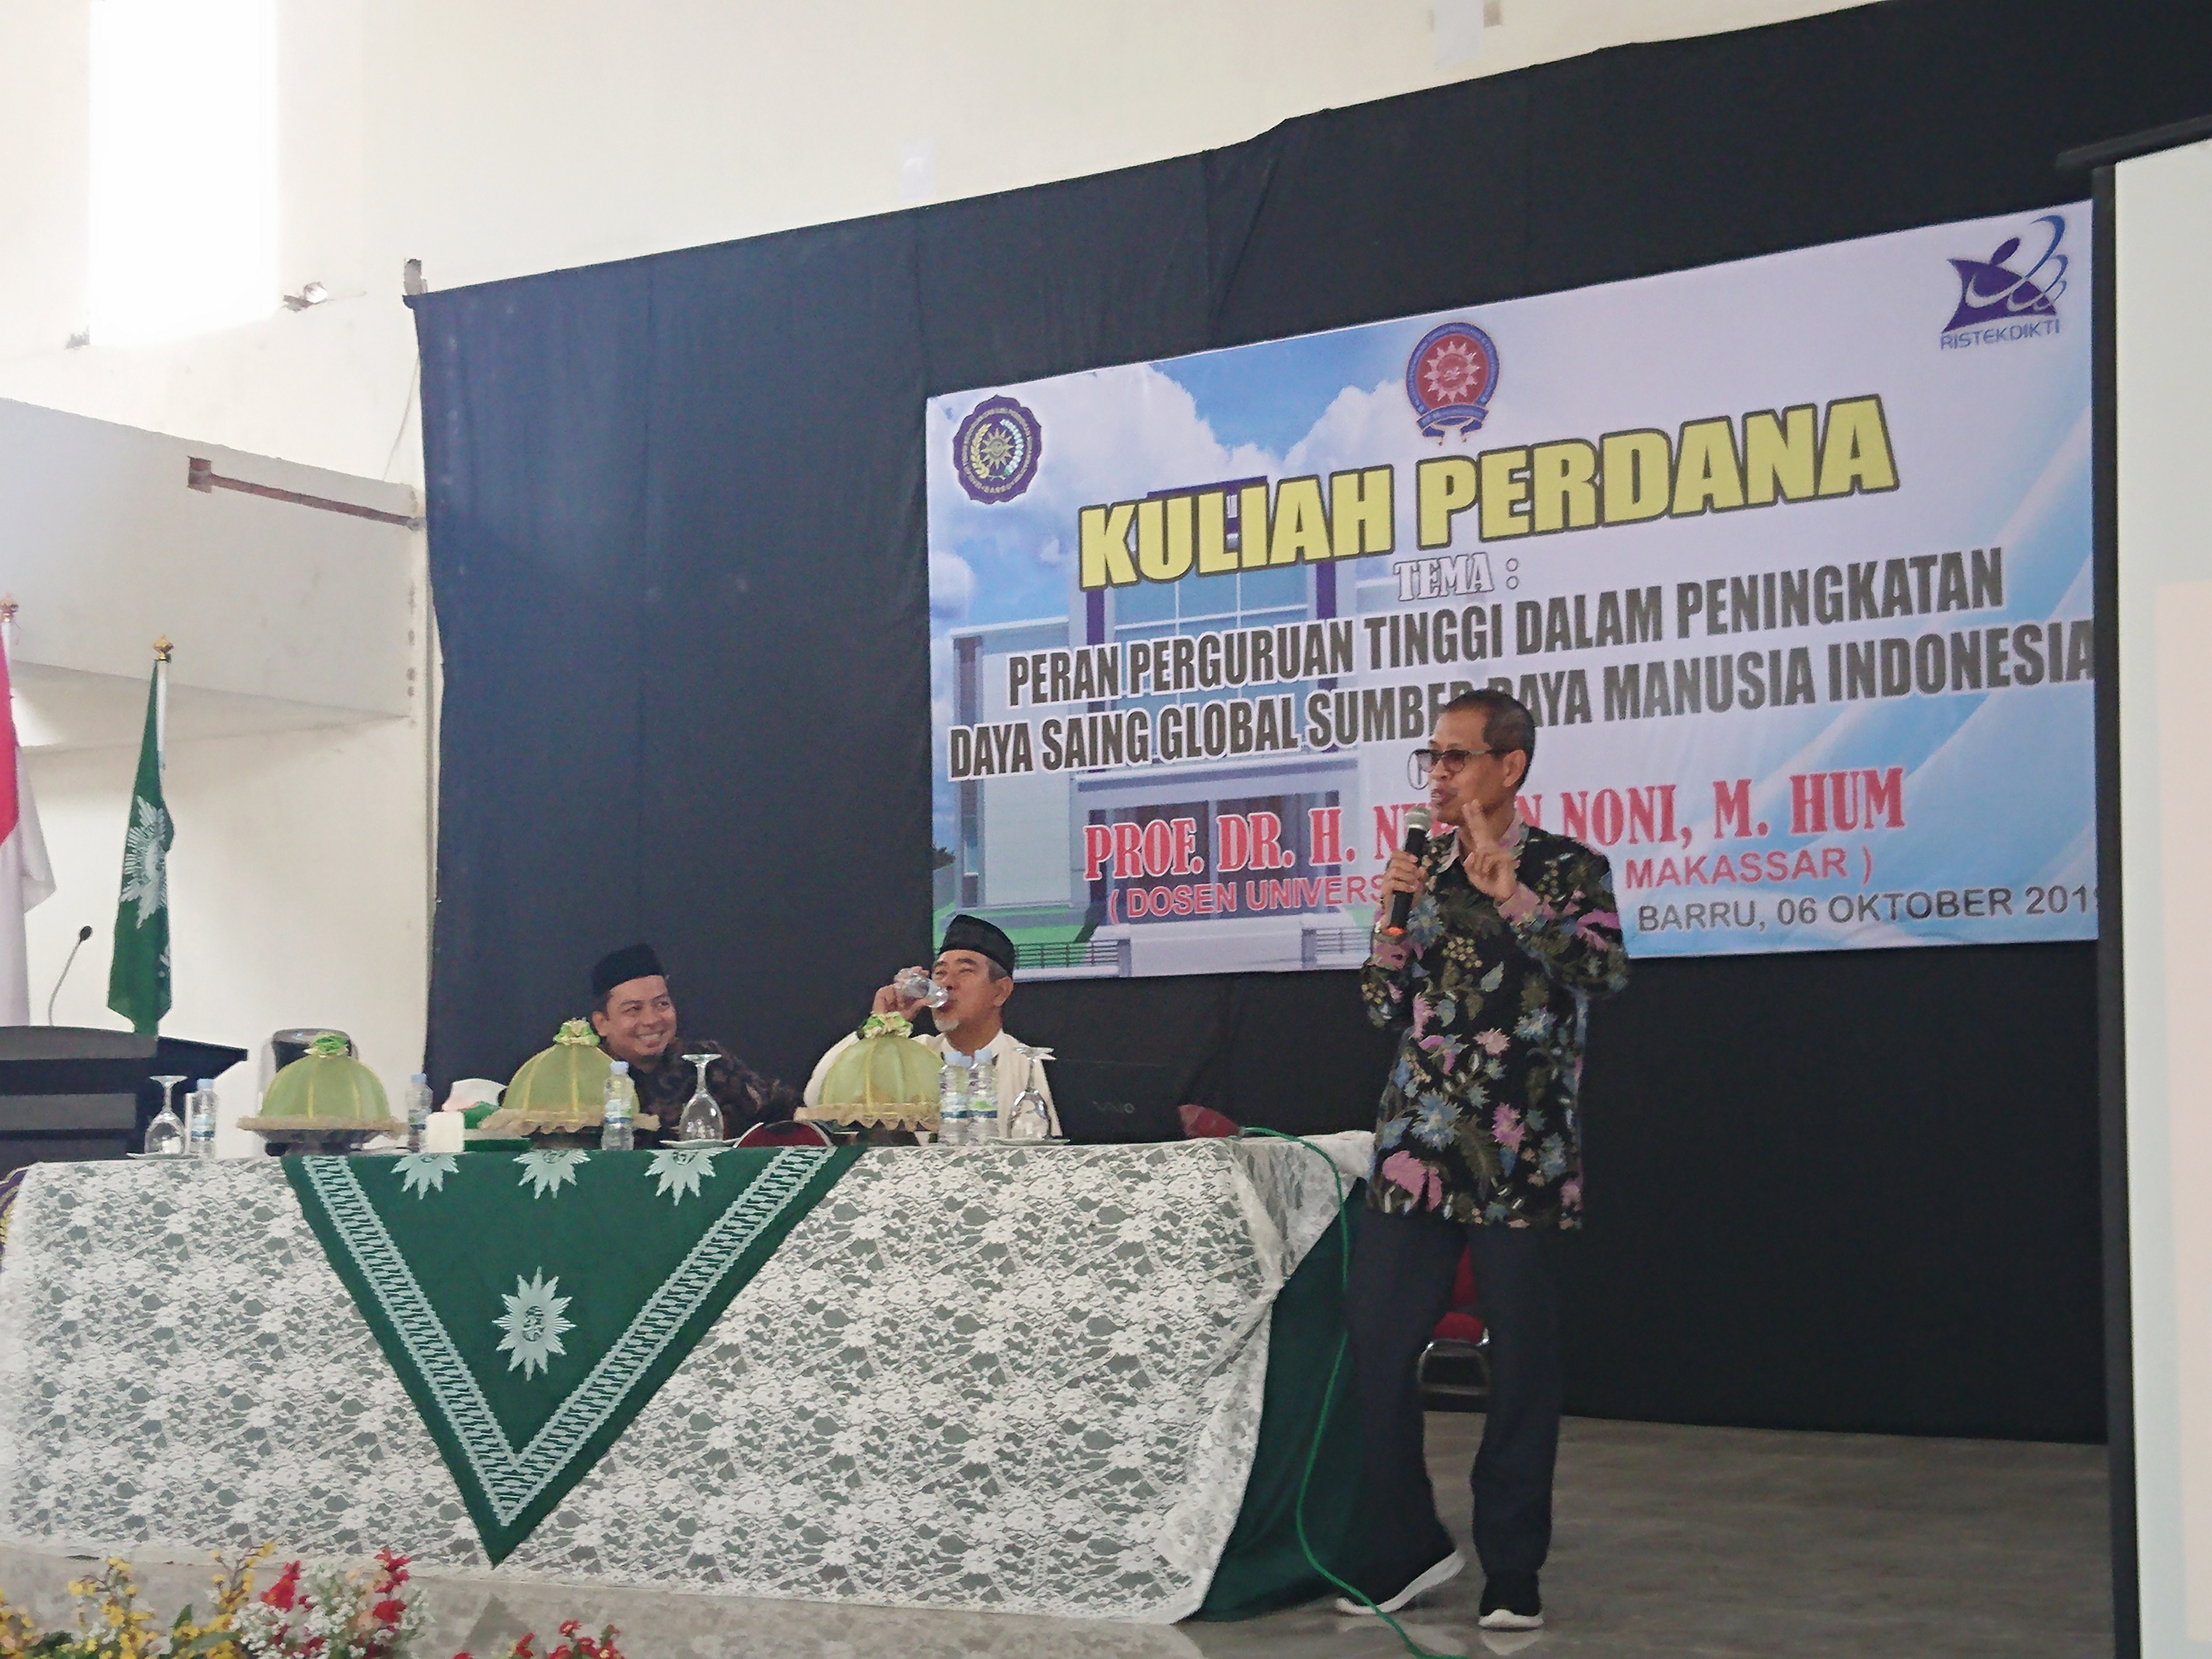 Prof. Dr. H. Nurdin Noni dengan materi Daya Saing Gobal SDM di Indonesia